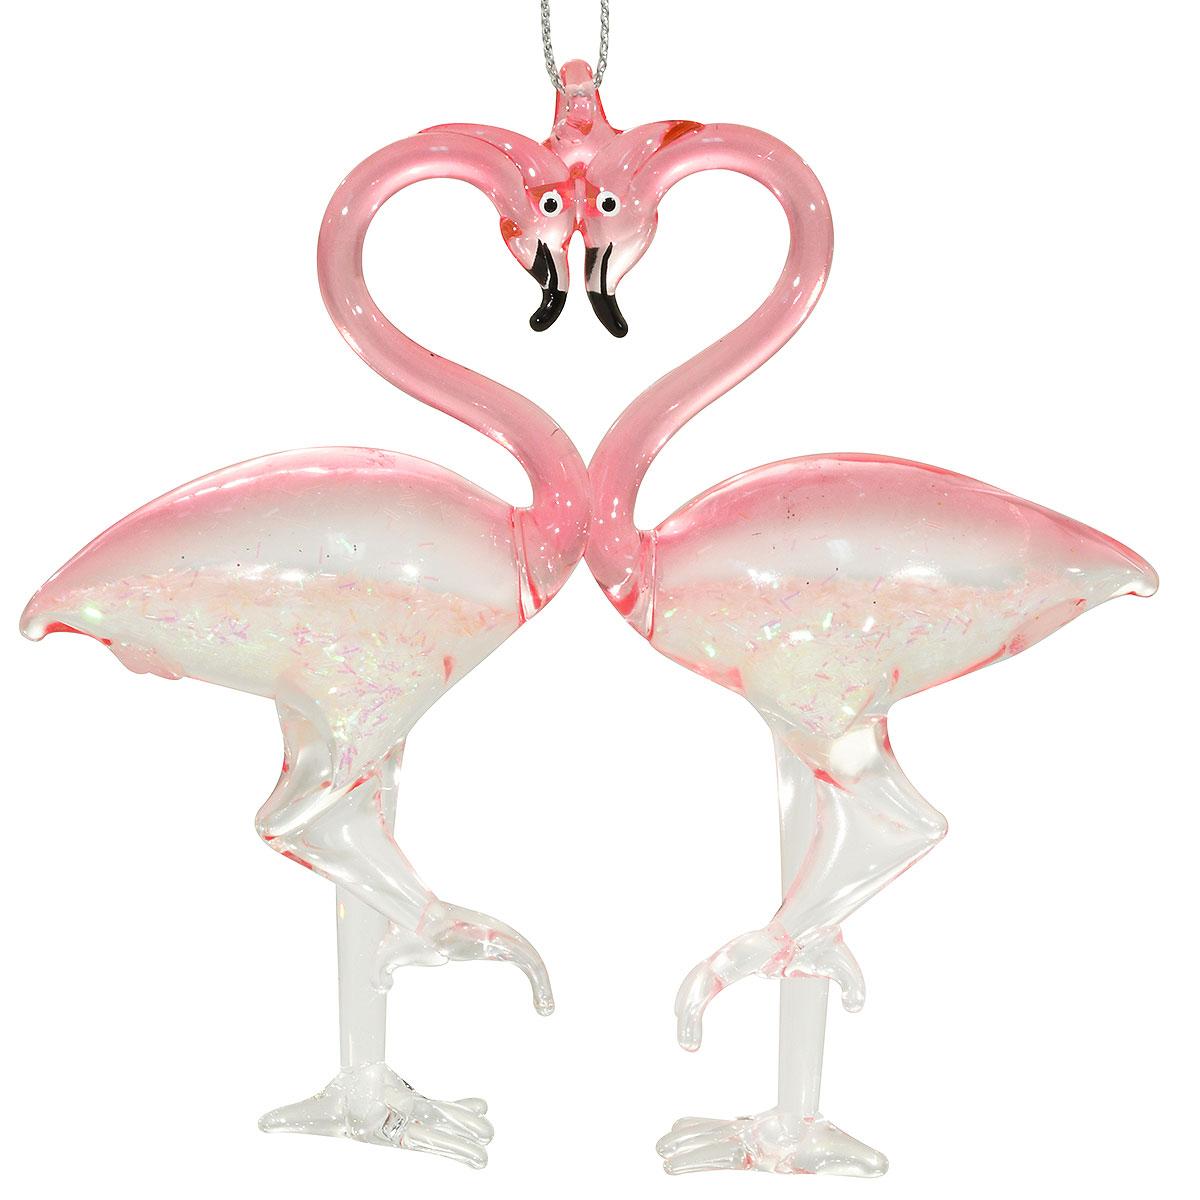 Spun Glass Flamingos Ornament